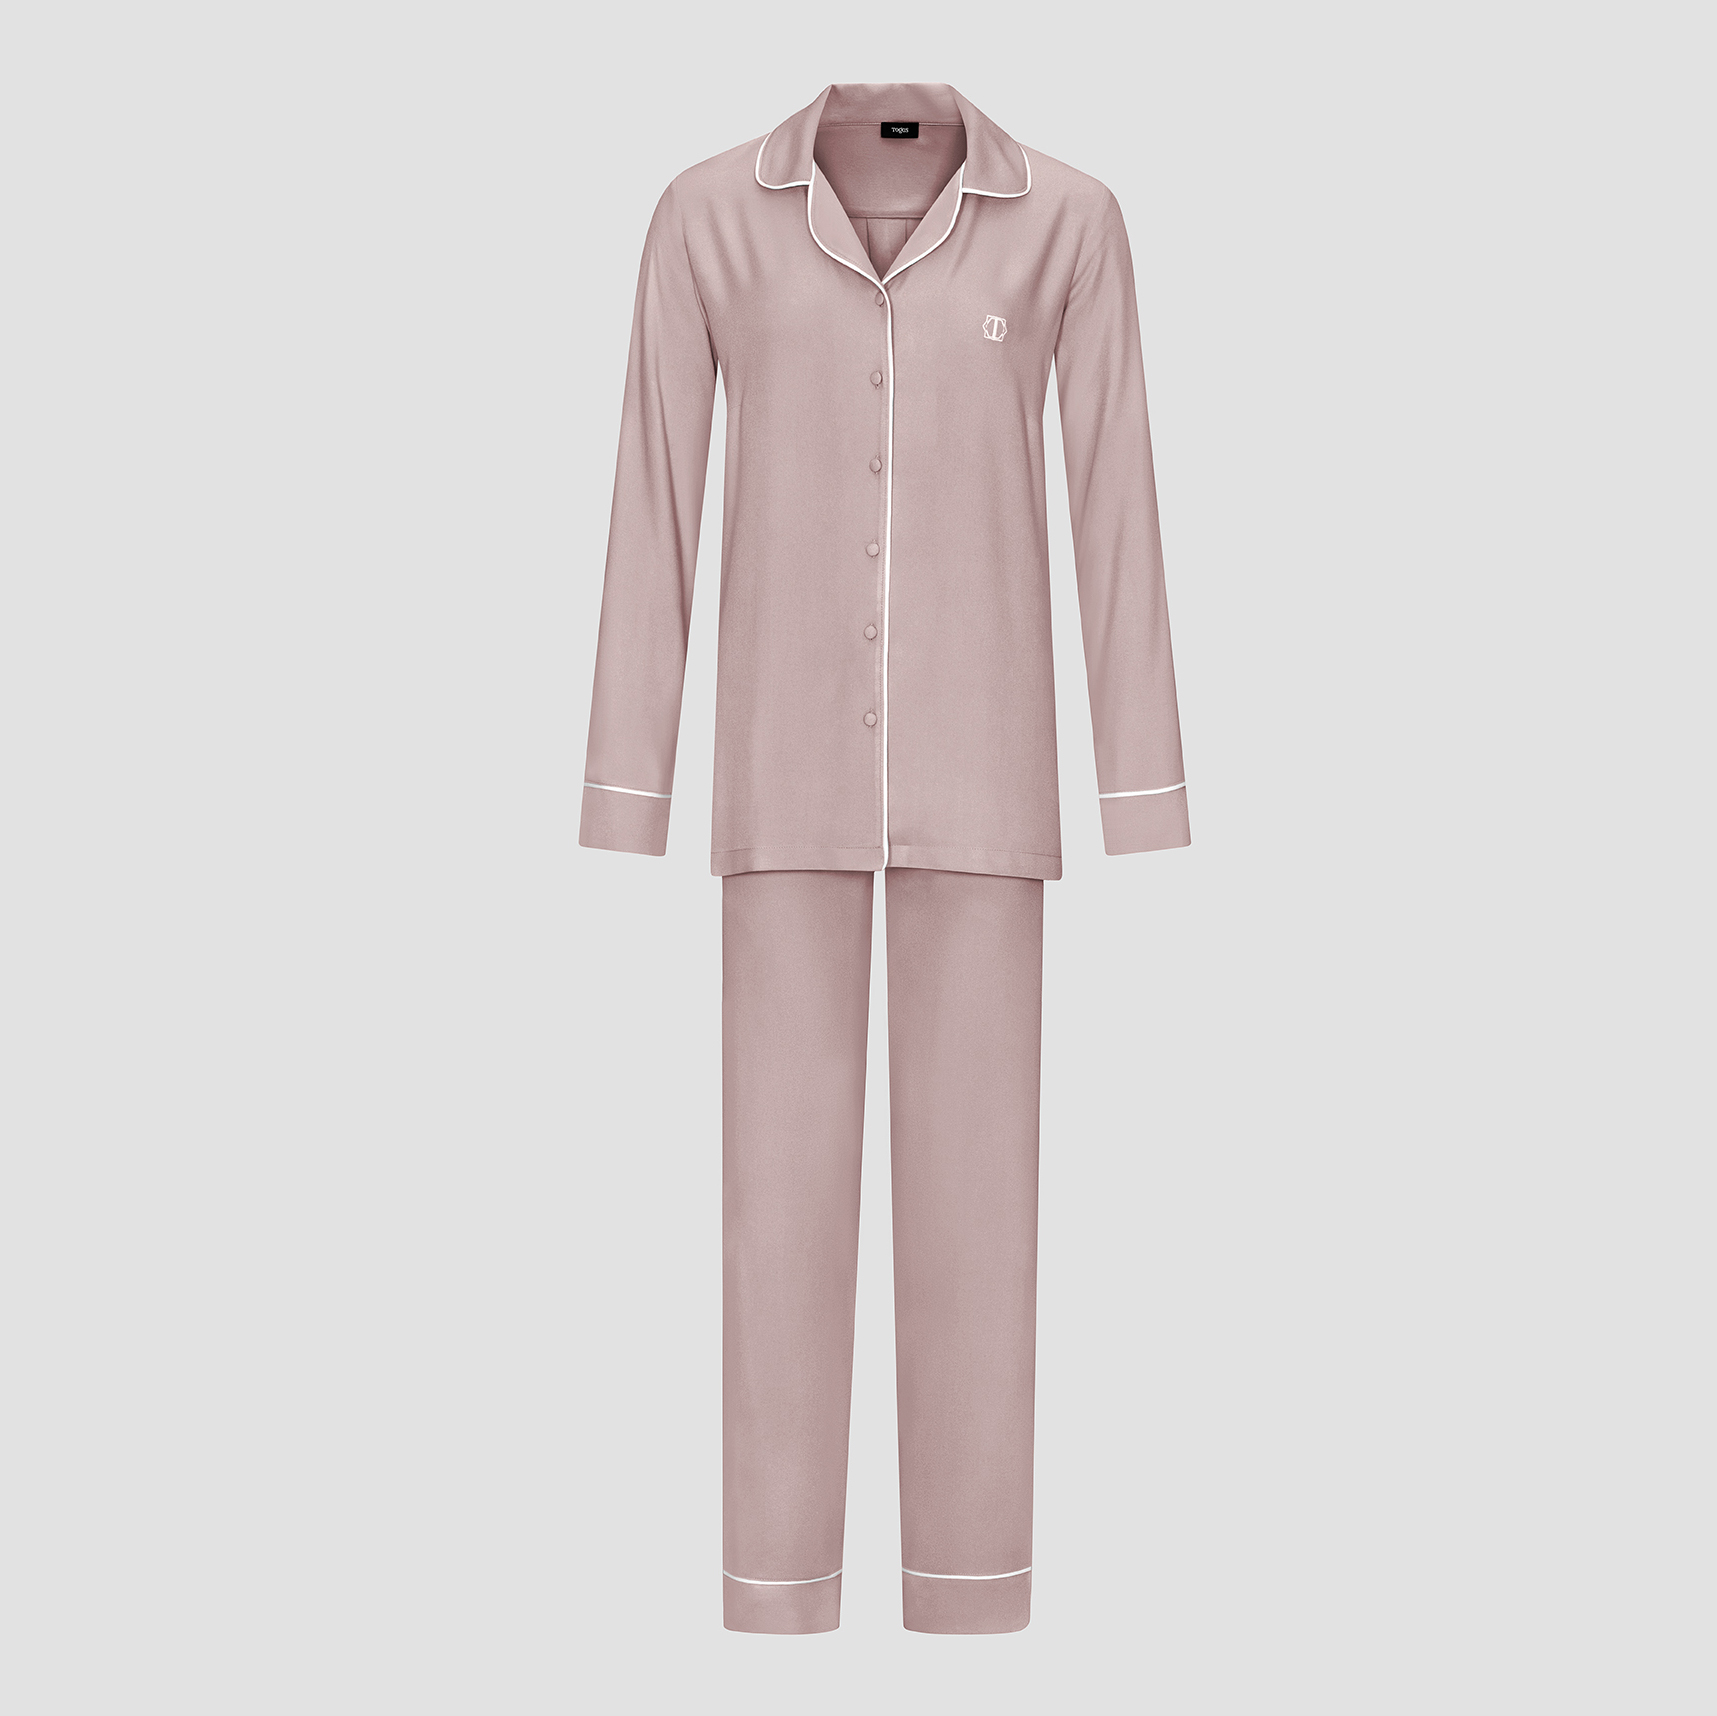 Пижама женская Togas Рамель розовая 2 предмета жен пижама с брюками арт 23 0412 индиго р 48